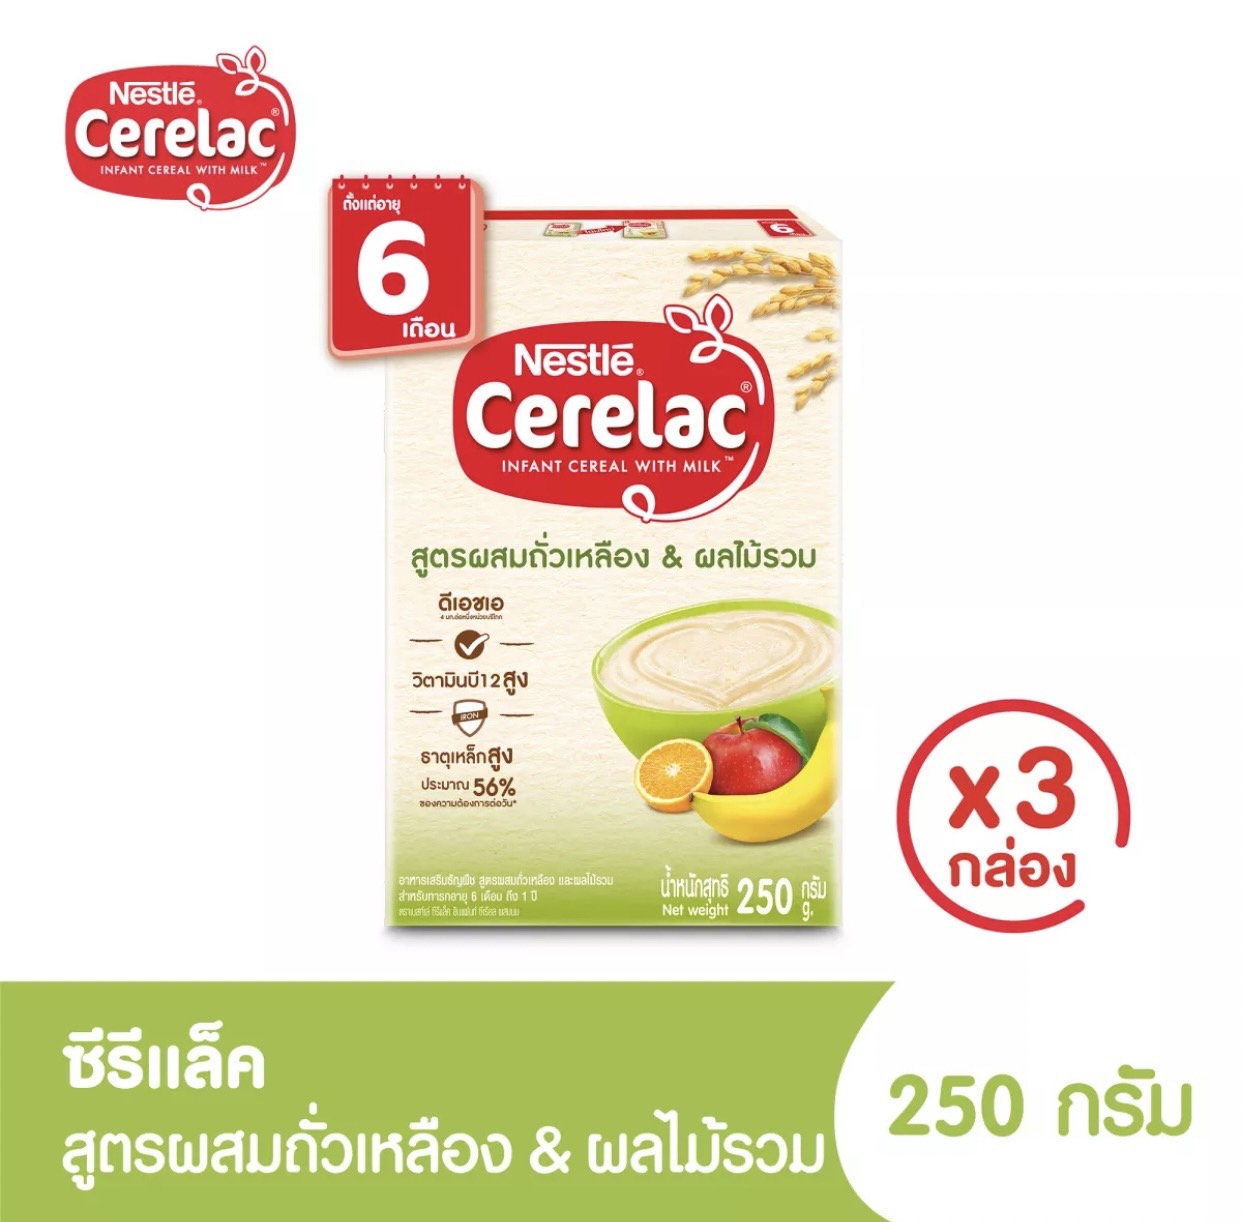 ภาพประกอบคำอธิบาย CERELAC ซีรีแล็ค อาหารเสริมสำหรับเด็ก ตั้งแต่อายุ 6 เดือนขึ้นไป ขนาด 200/250 มล แพ็ค 3 กล่อง